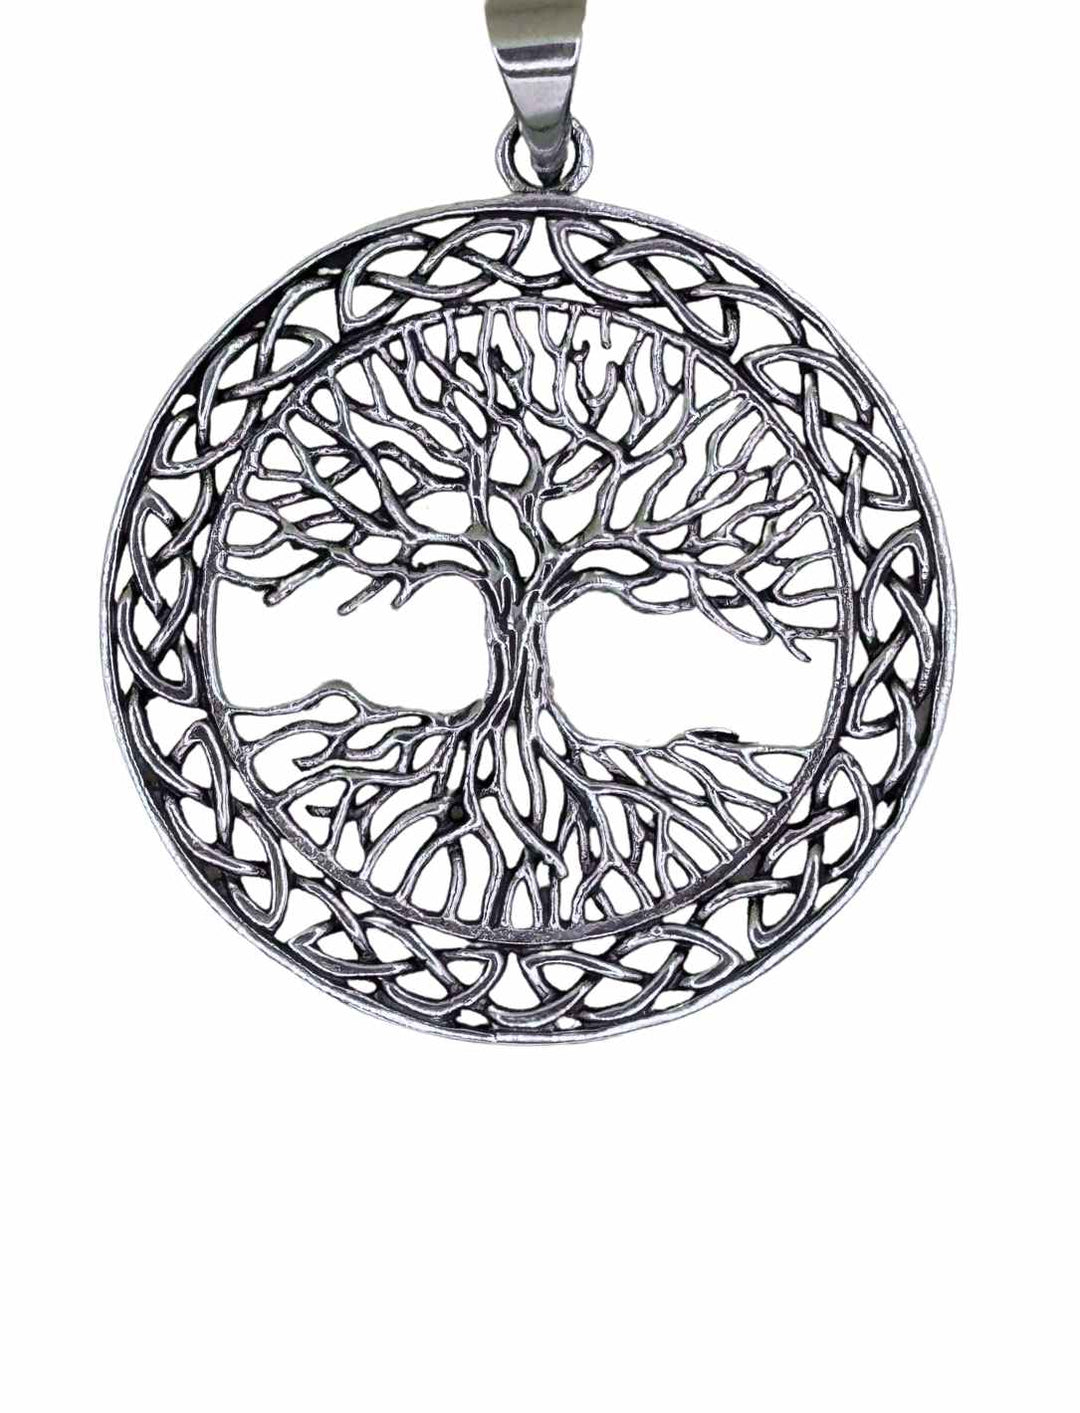 Baum der neun Welten Anhänger aus 925 Sterling Silber auf weißem Hintergrund, zeigt Yggdrasil, das die neun Welten der nordischen Mythologie verbindet.